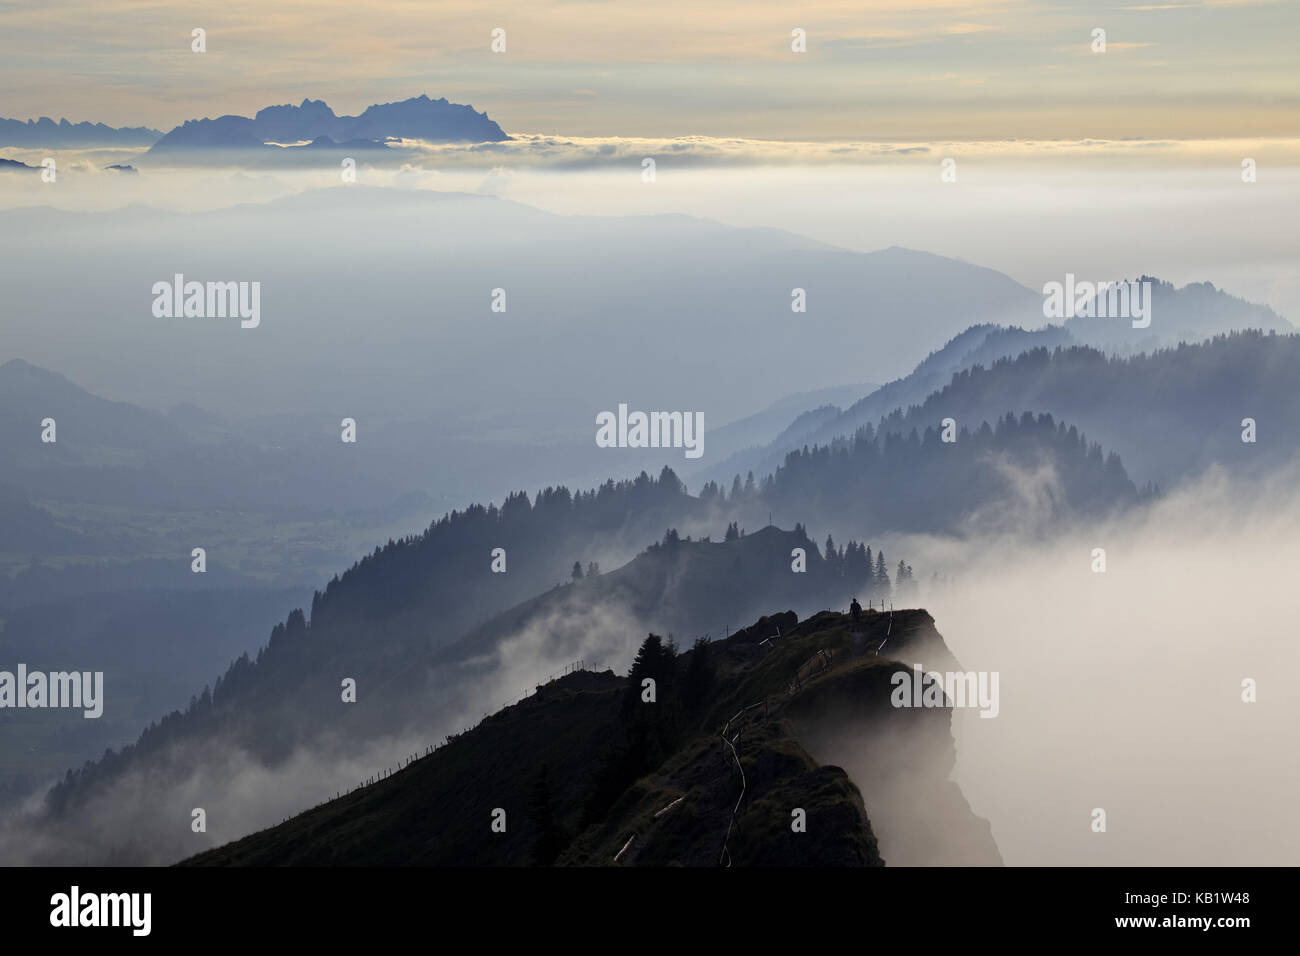 Germany, Bavaria, Allgäu, upper Allgäu, Allgäu alps, crest, Nagelfluhkette (mountain range), hiker, Säntis, Appenzell, Switzerland, Stock Photo